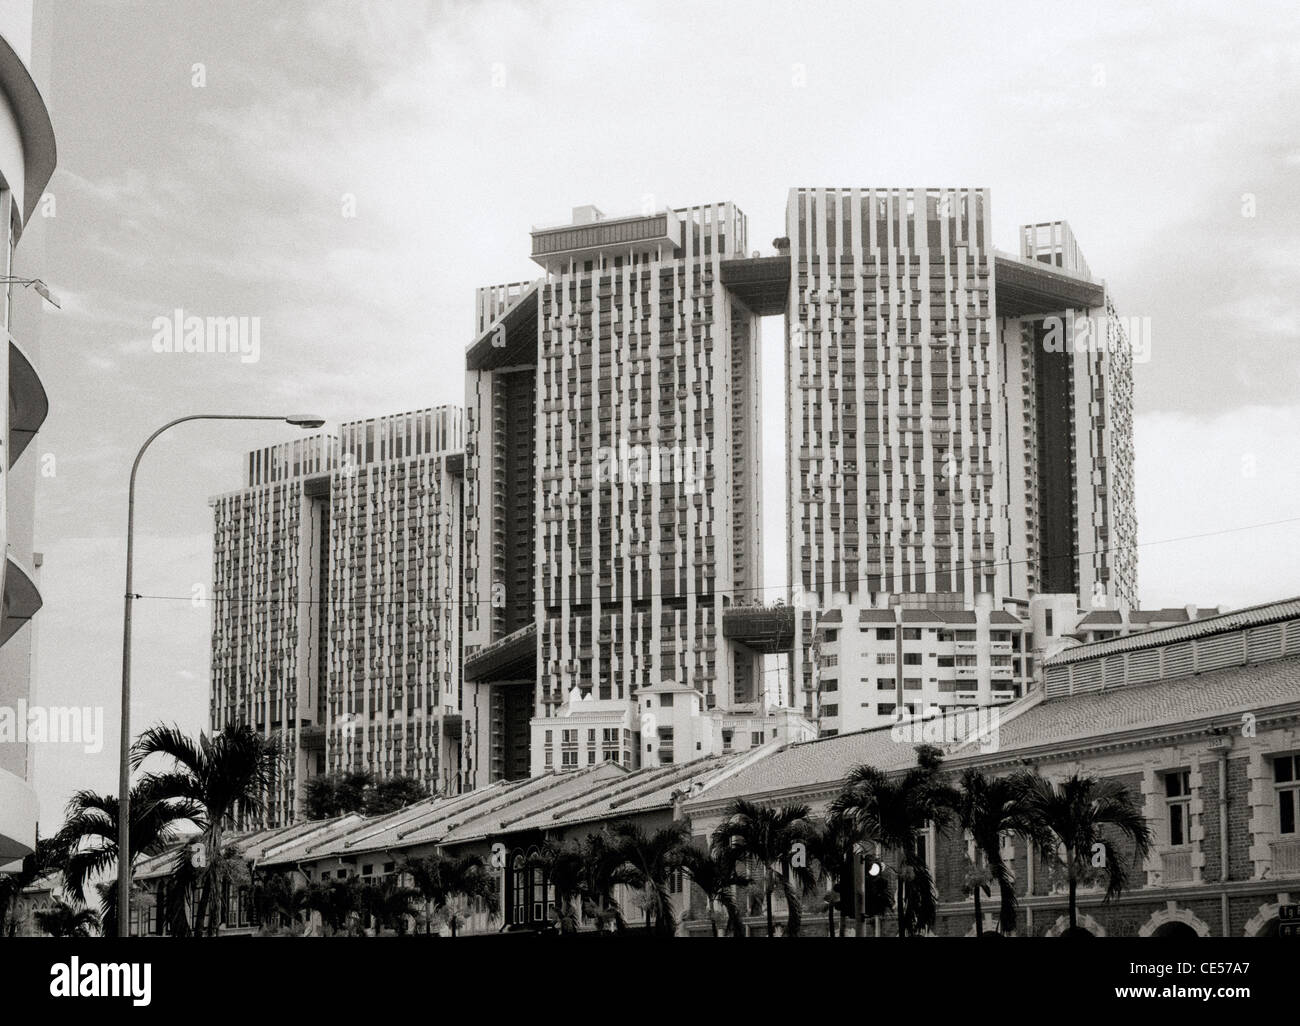 Alta densità alloggiamento pubblico a Singapore in Estremo Oriente Asia sud-orientale. Architettura grattacielo Torre appartamento condominio blocco elevato aumento marcia Foto Stock